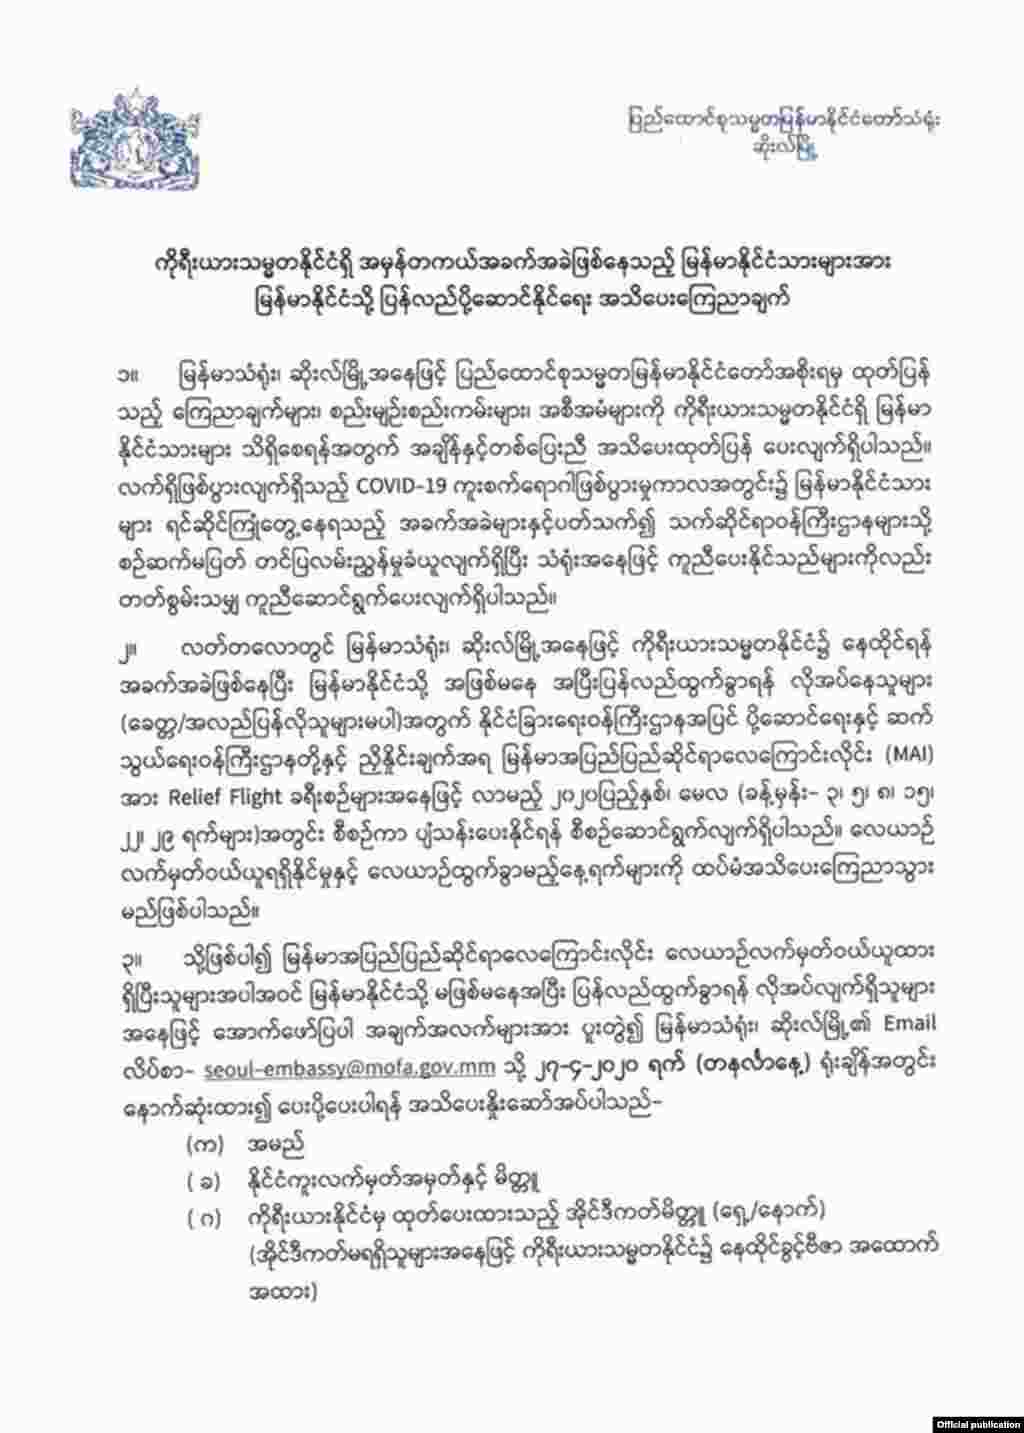 ဆိုးလ်မြို့ မြန်မာသံရုံး ကြေညာချက်။ (ဧပြီ ၂၅၊ ၂၀၂၀)